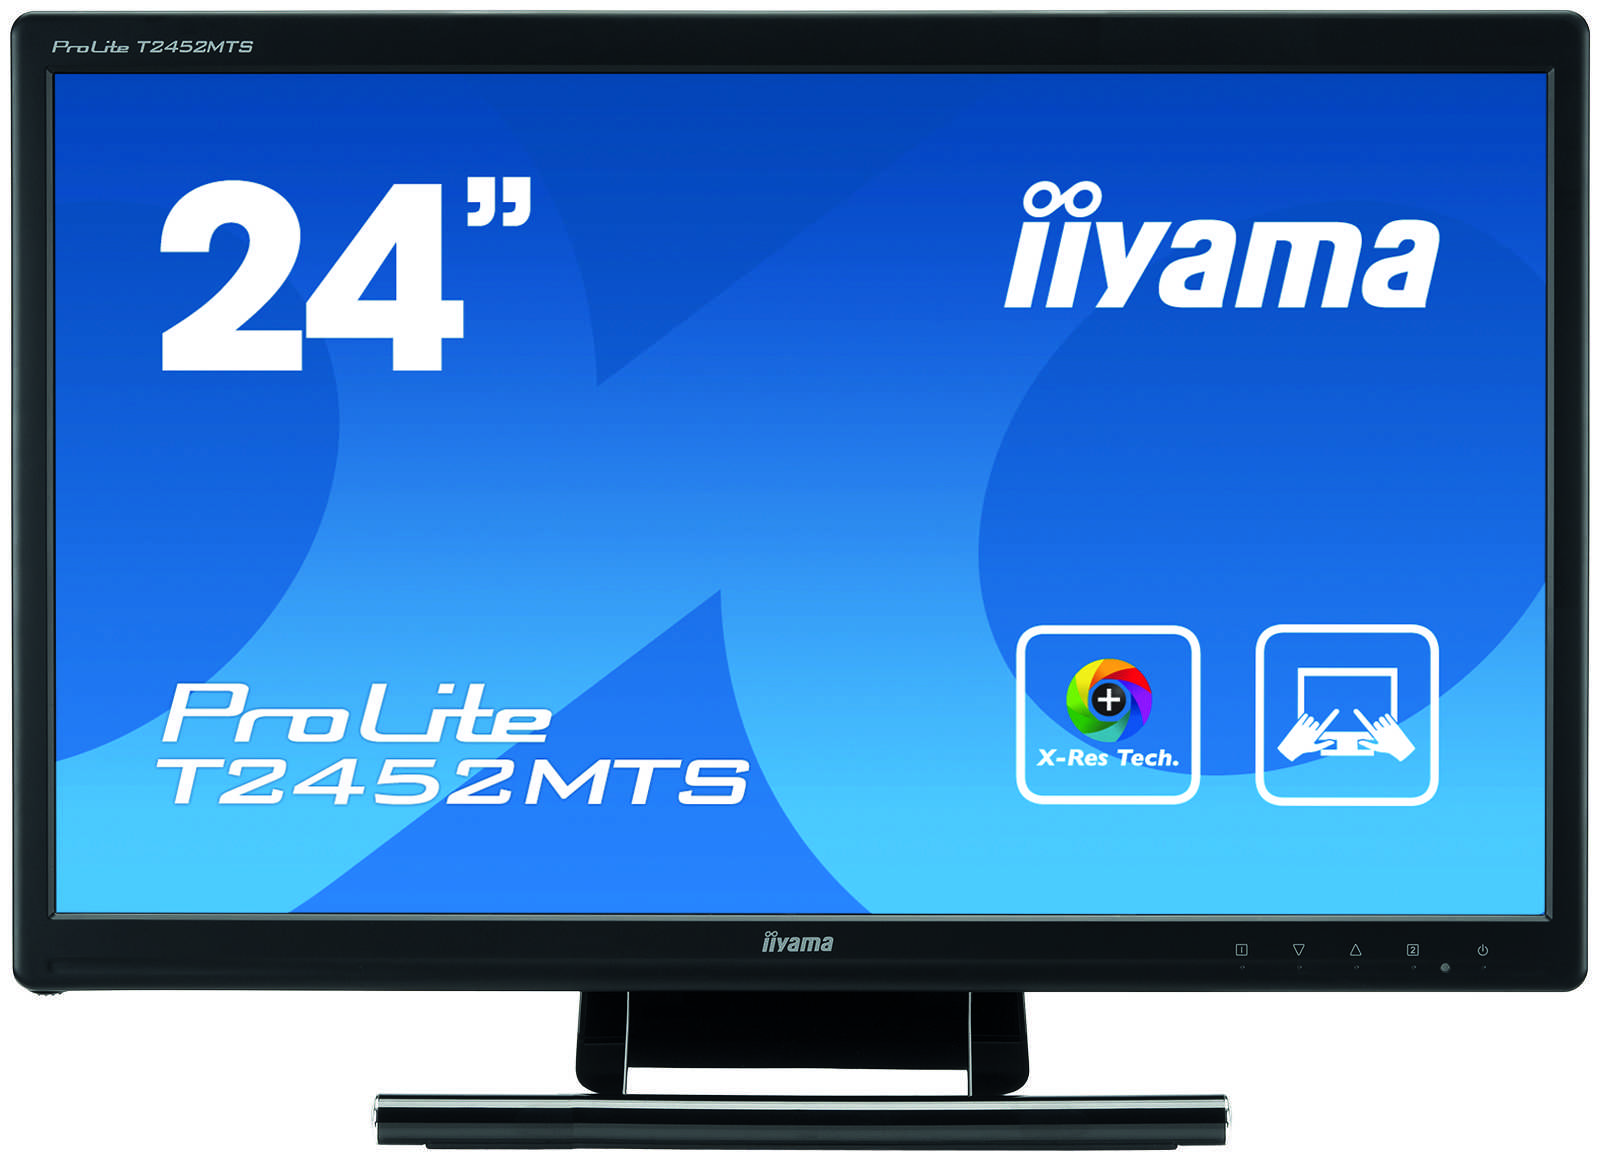 Жк монитор 23.6" iiyama prolite t2452mts-b1 — купить, цена и характеристики, отзывы